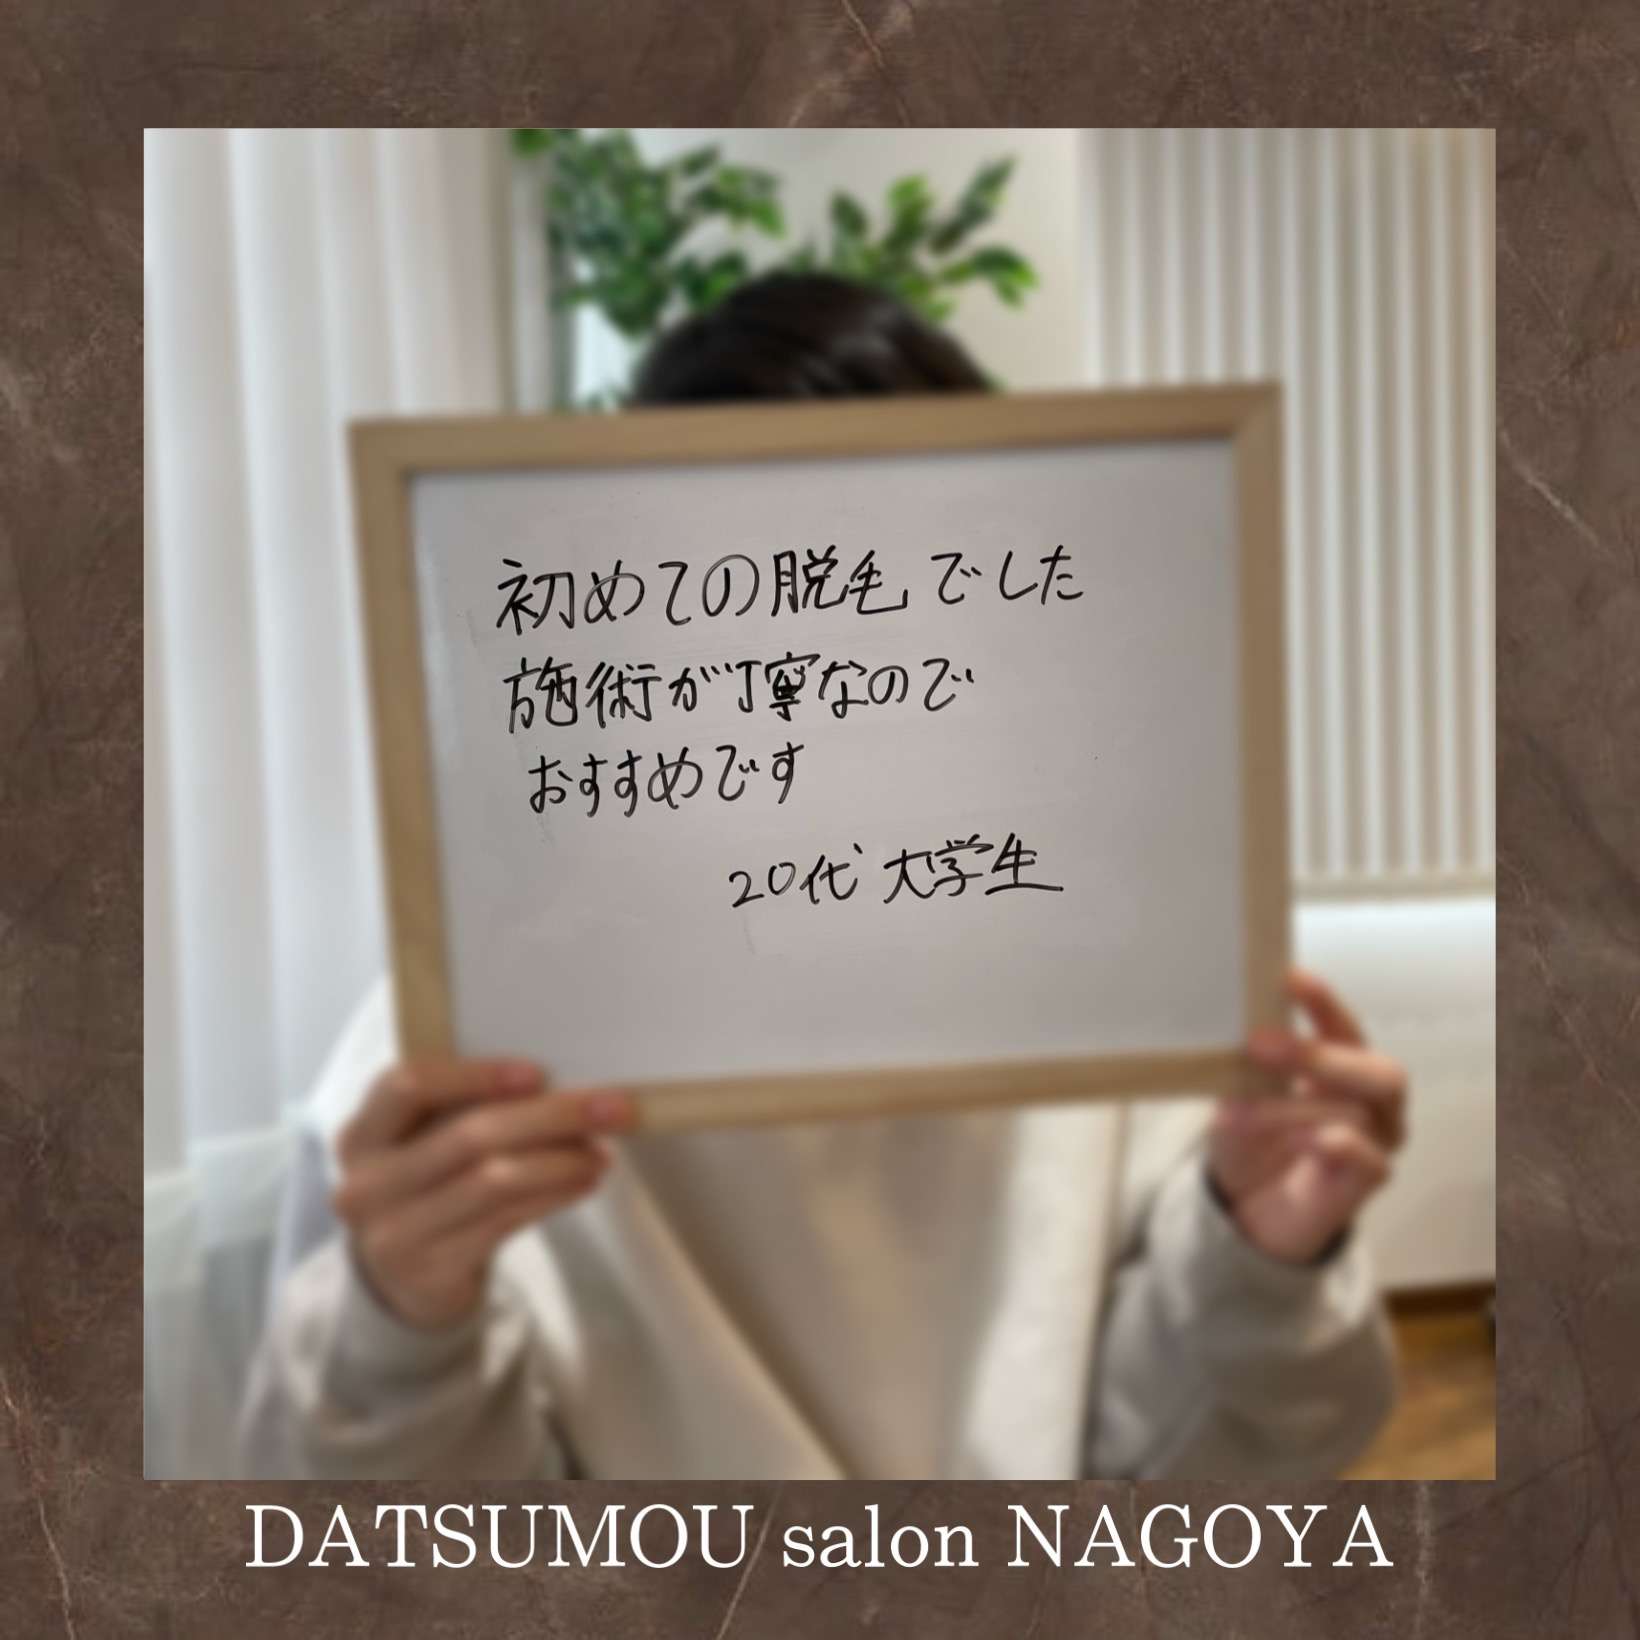 メンズ脱毛サロン DATSUMOU salon NAGOYAに学生さん大集合！！